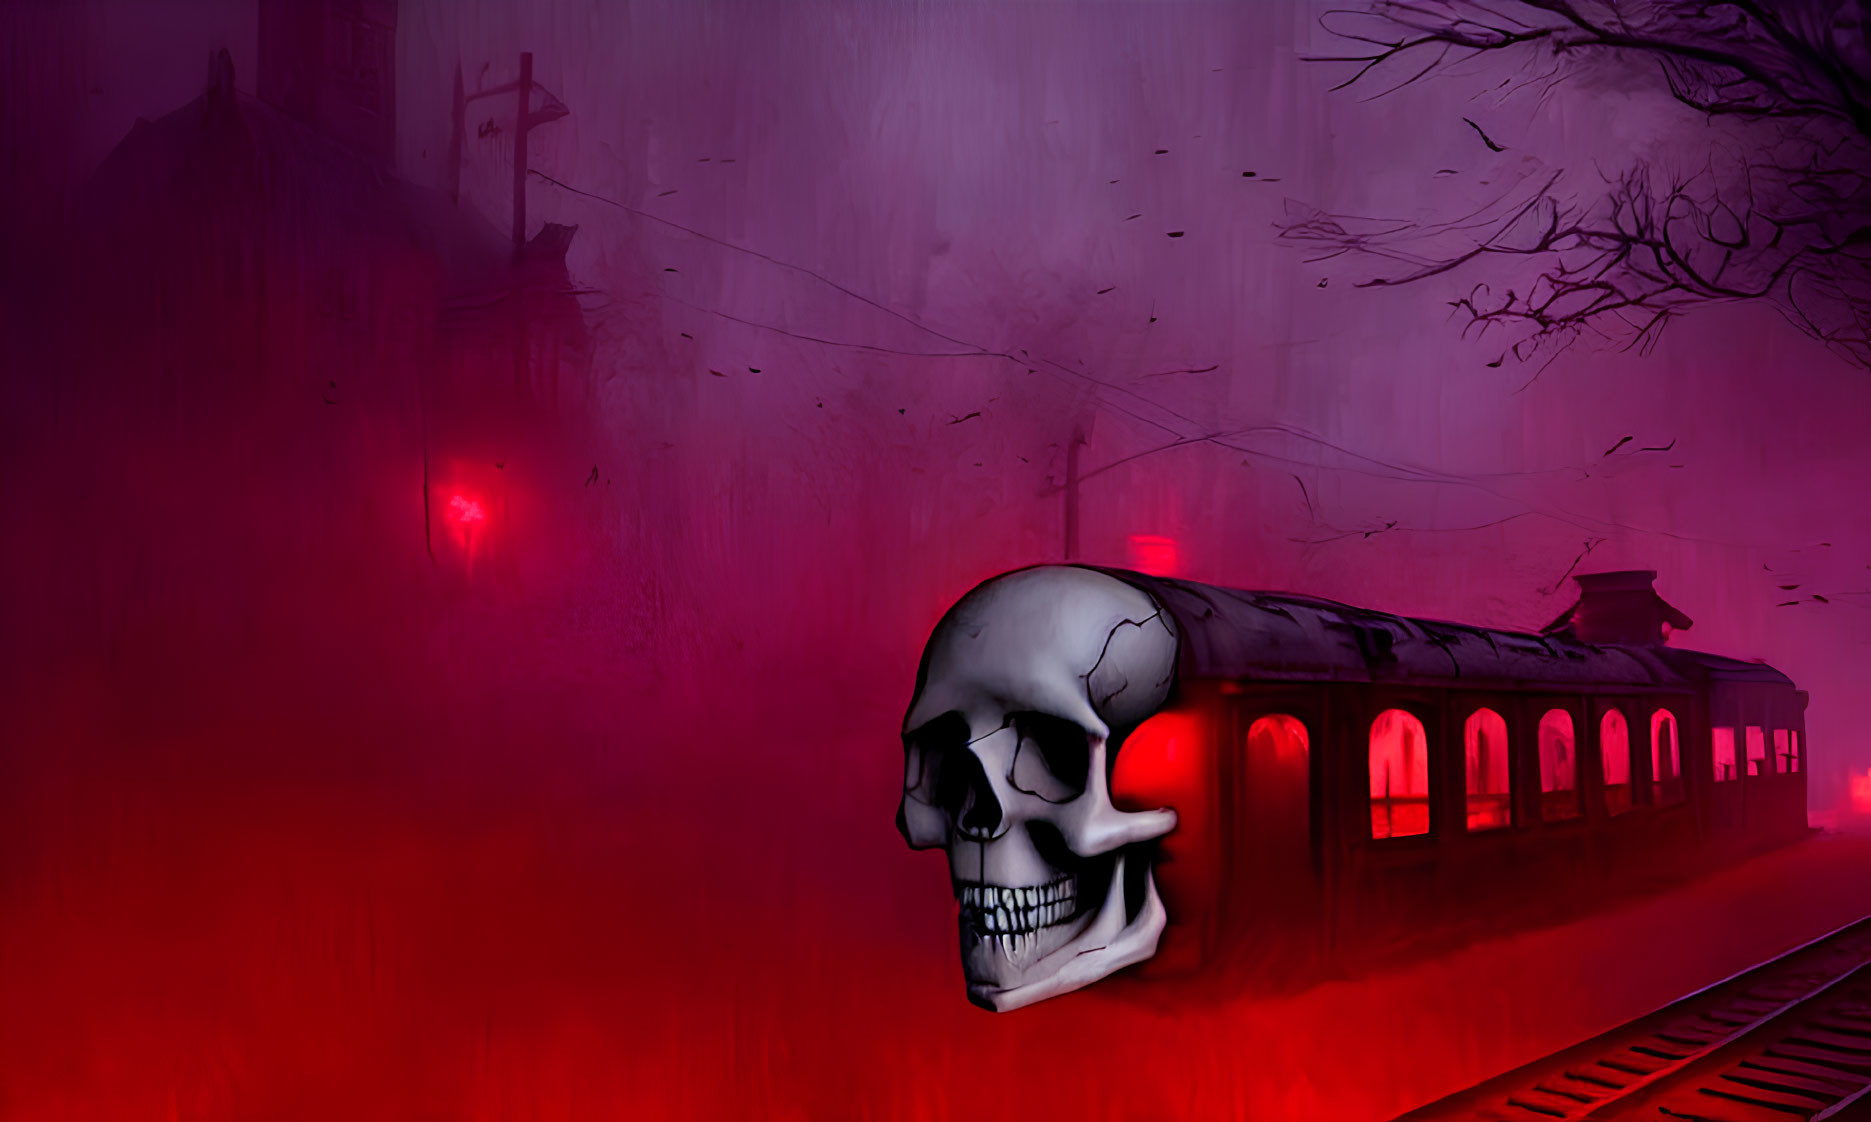 Skull Overlaps Train Illustration in Eerie Setting